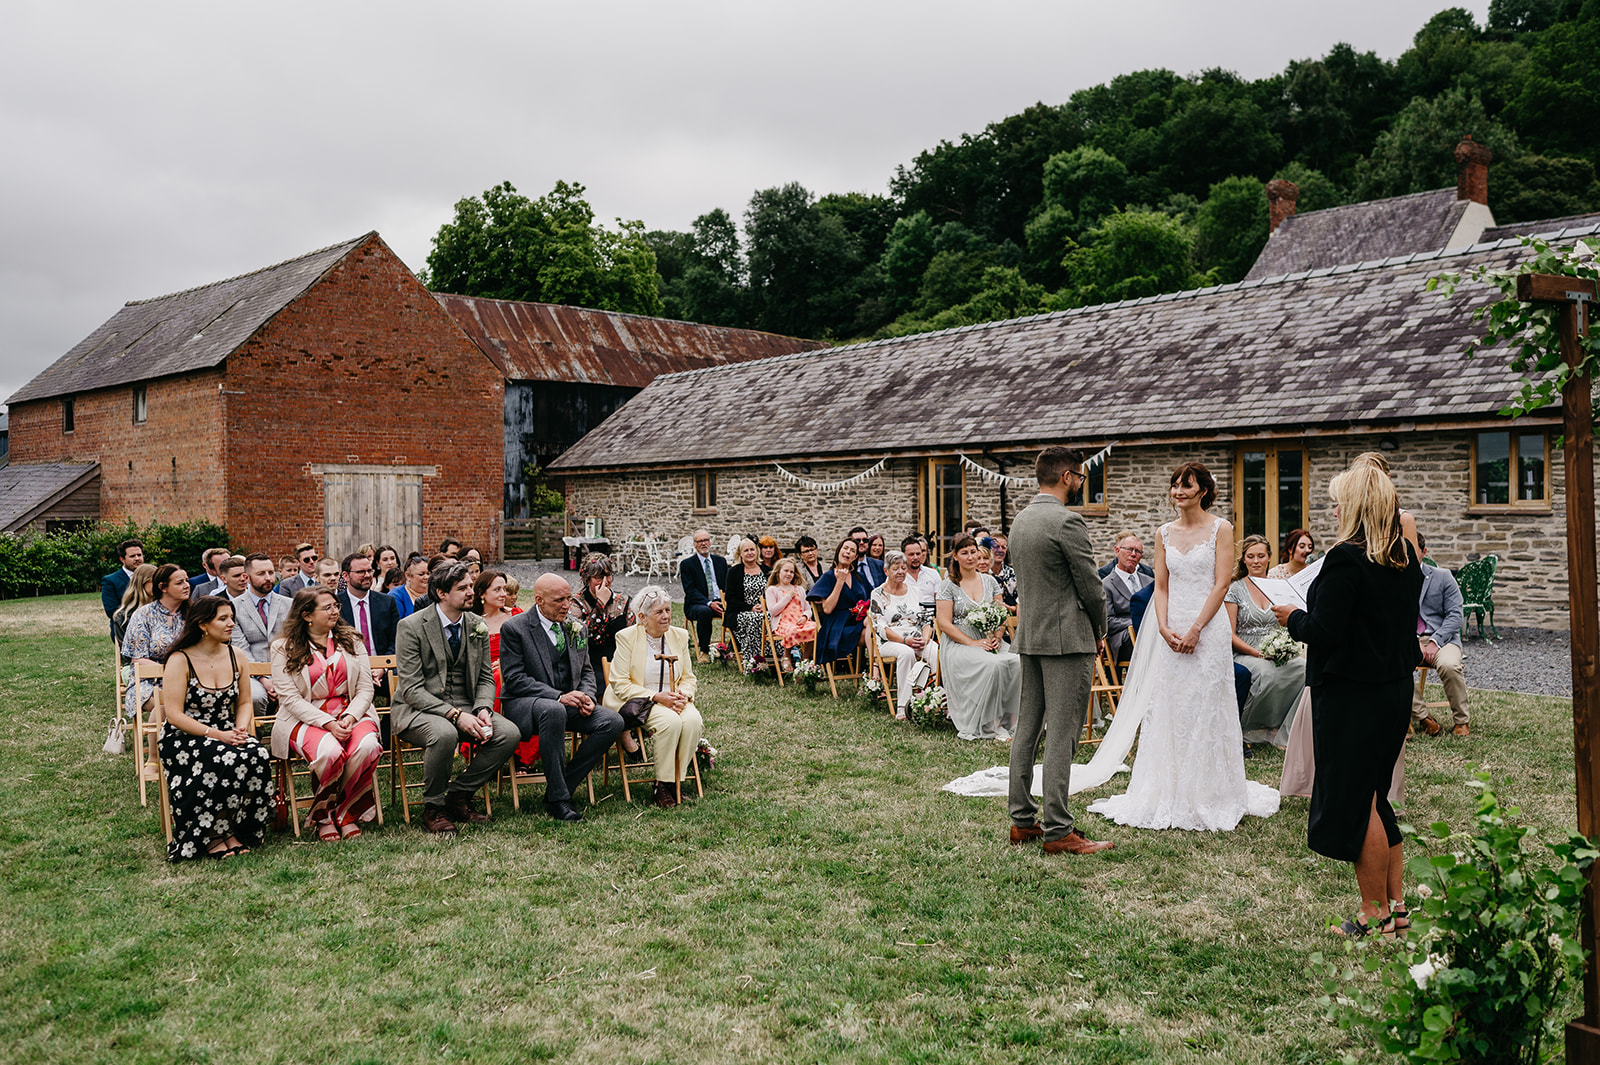 Outdoor wedding ceremony at Camlad Barns